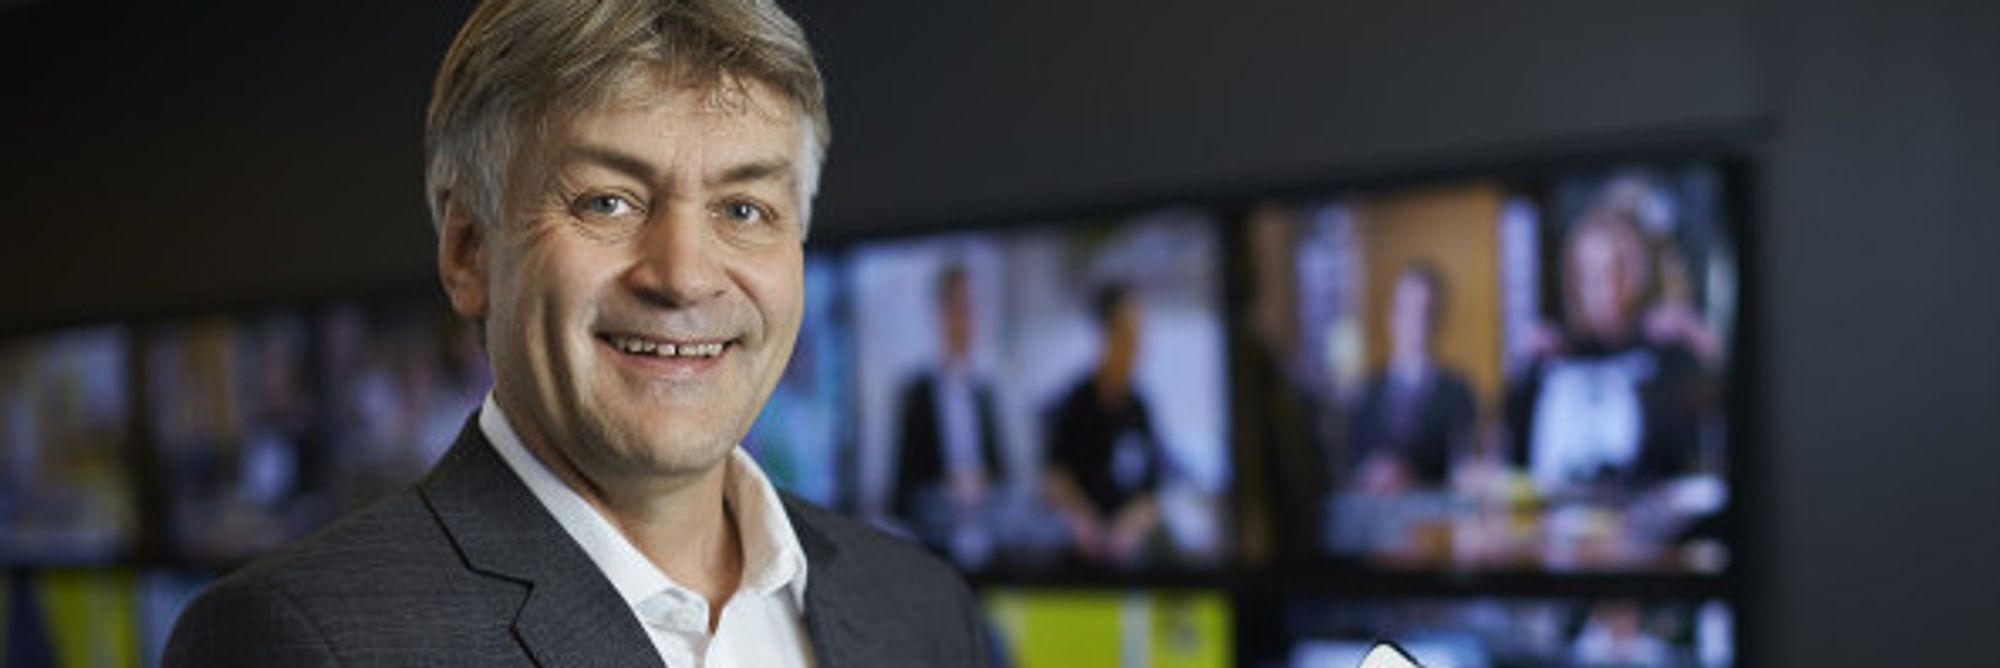 Administrerende direktør Gunnar Evensen i Get kan notere sterk vekst i 2013.